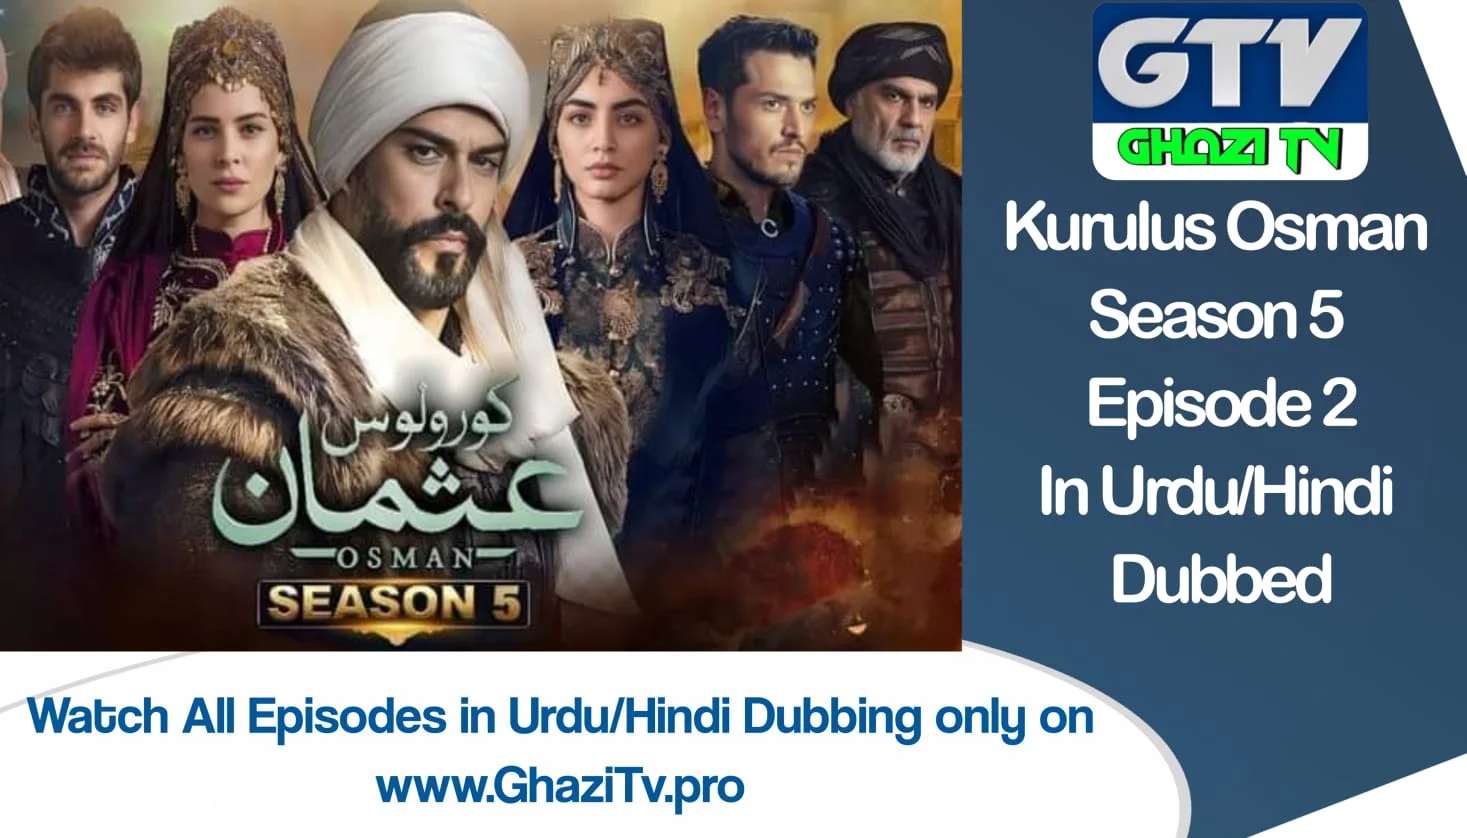 Kurulus Osman Season 5 Episode 2 in Hindi/Urdu Dubbing